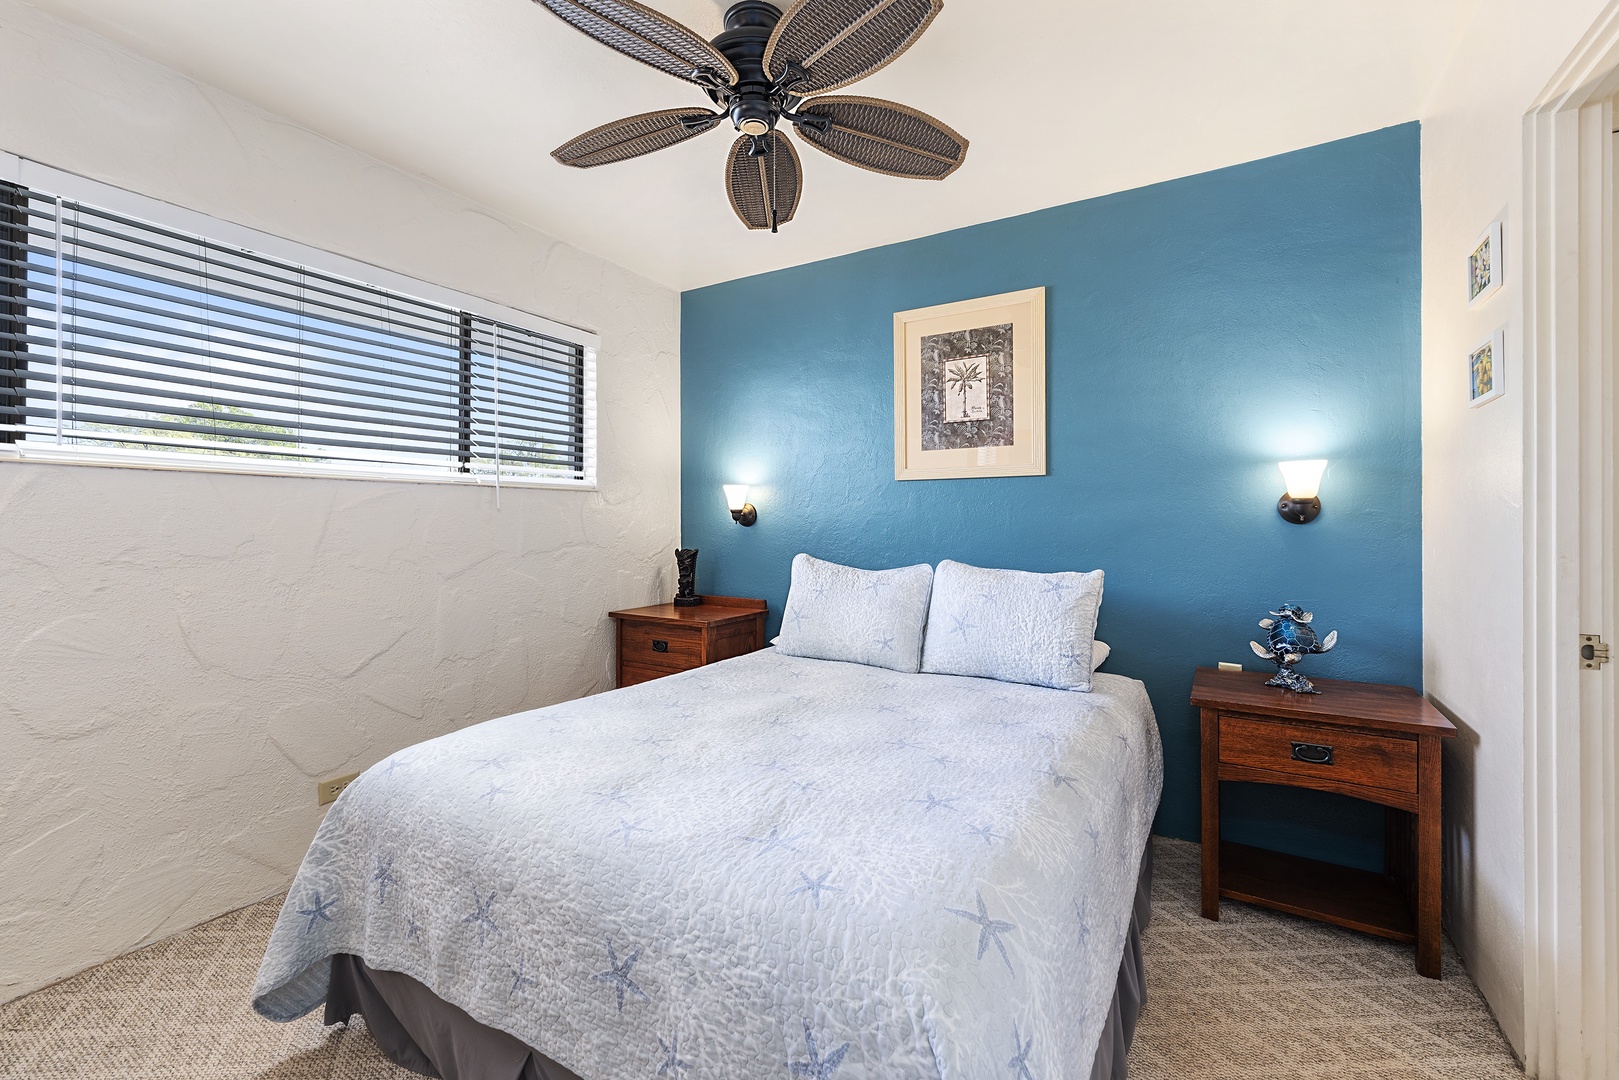 Kailua Kona Vacation Rentals, Casa De Emdeko 222 - Bedroom equipped with Queen bed